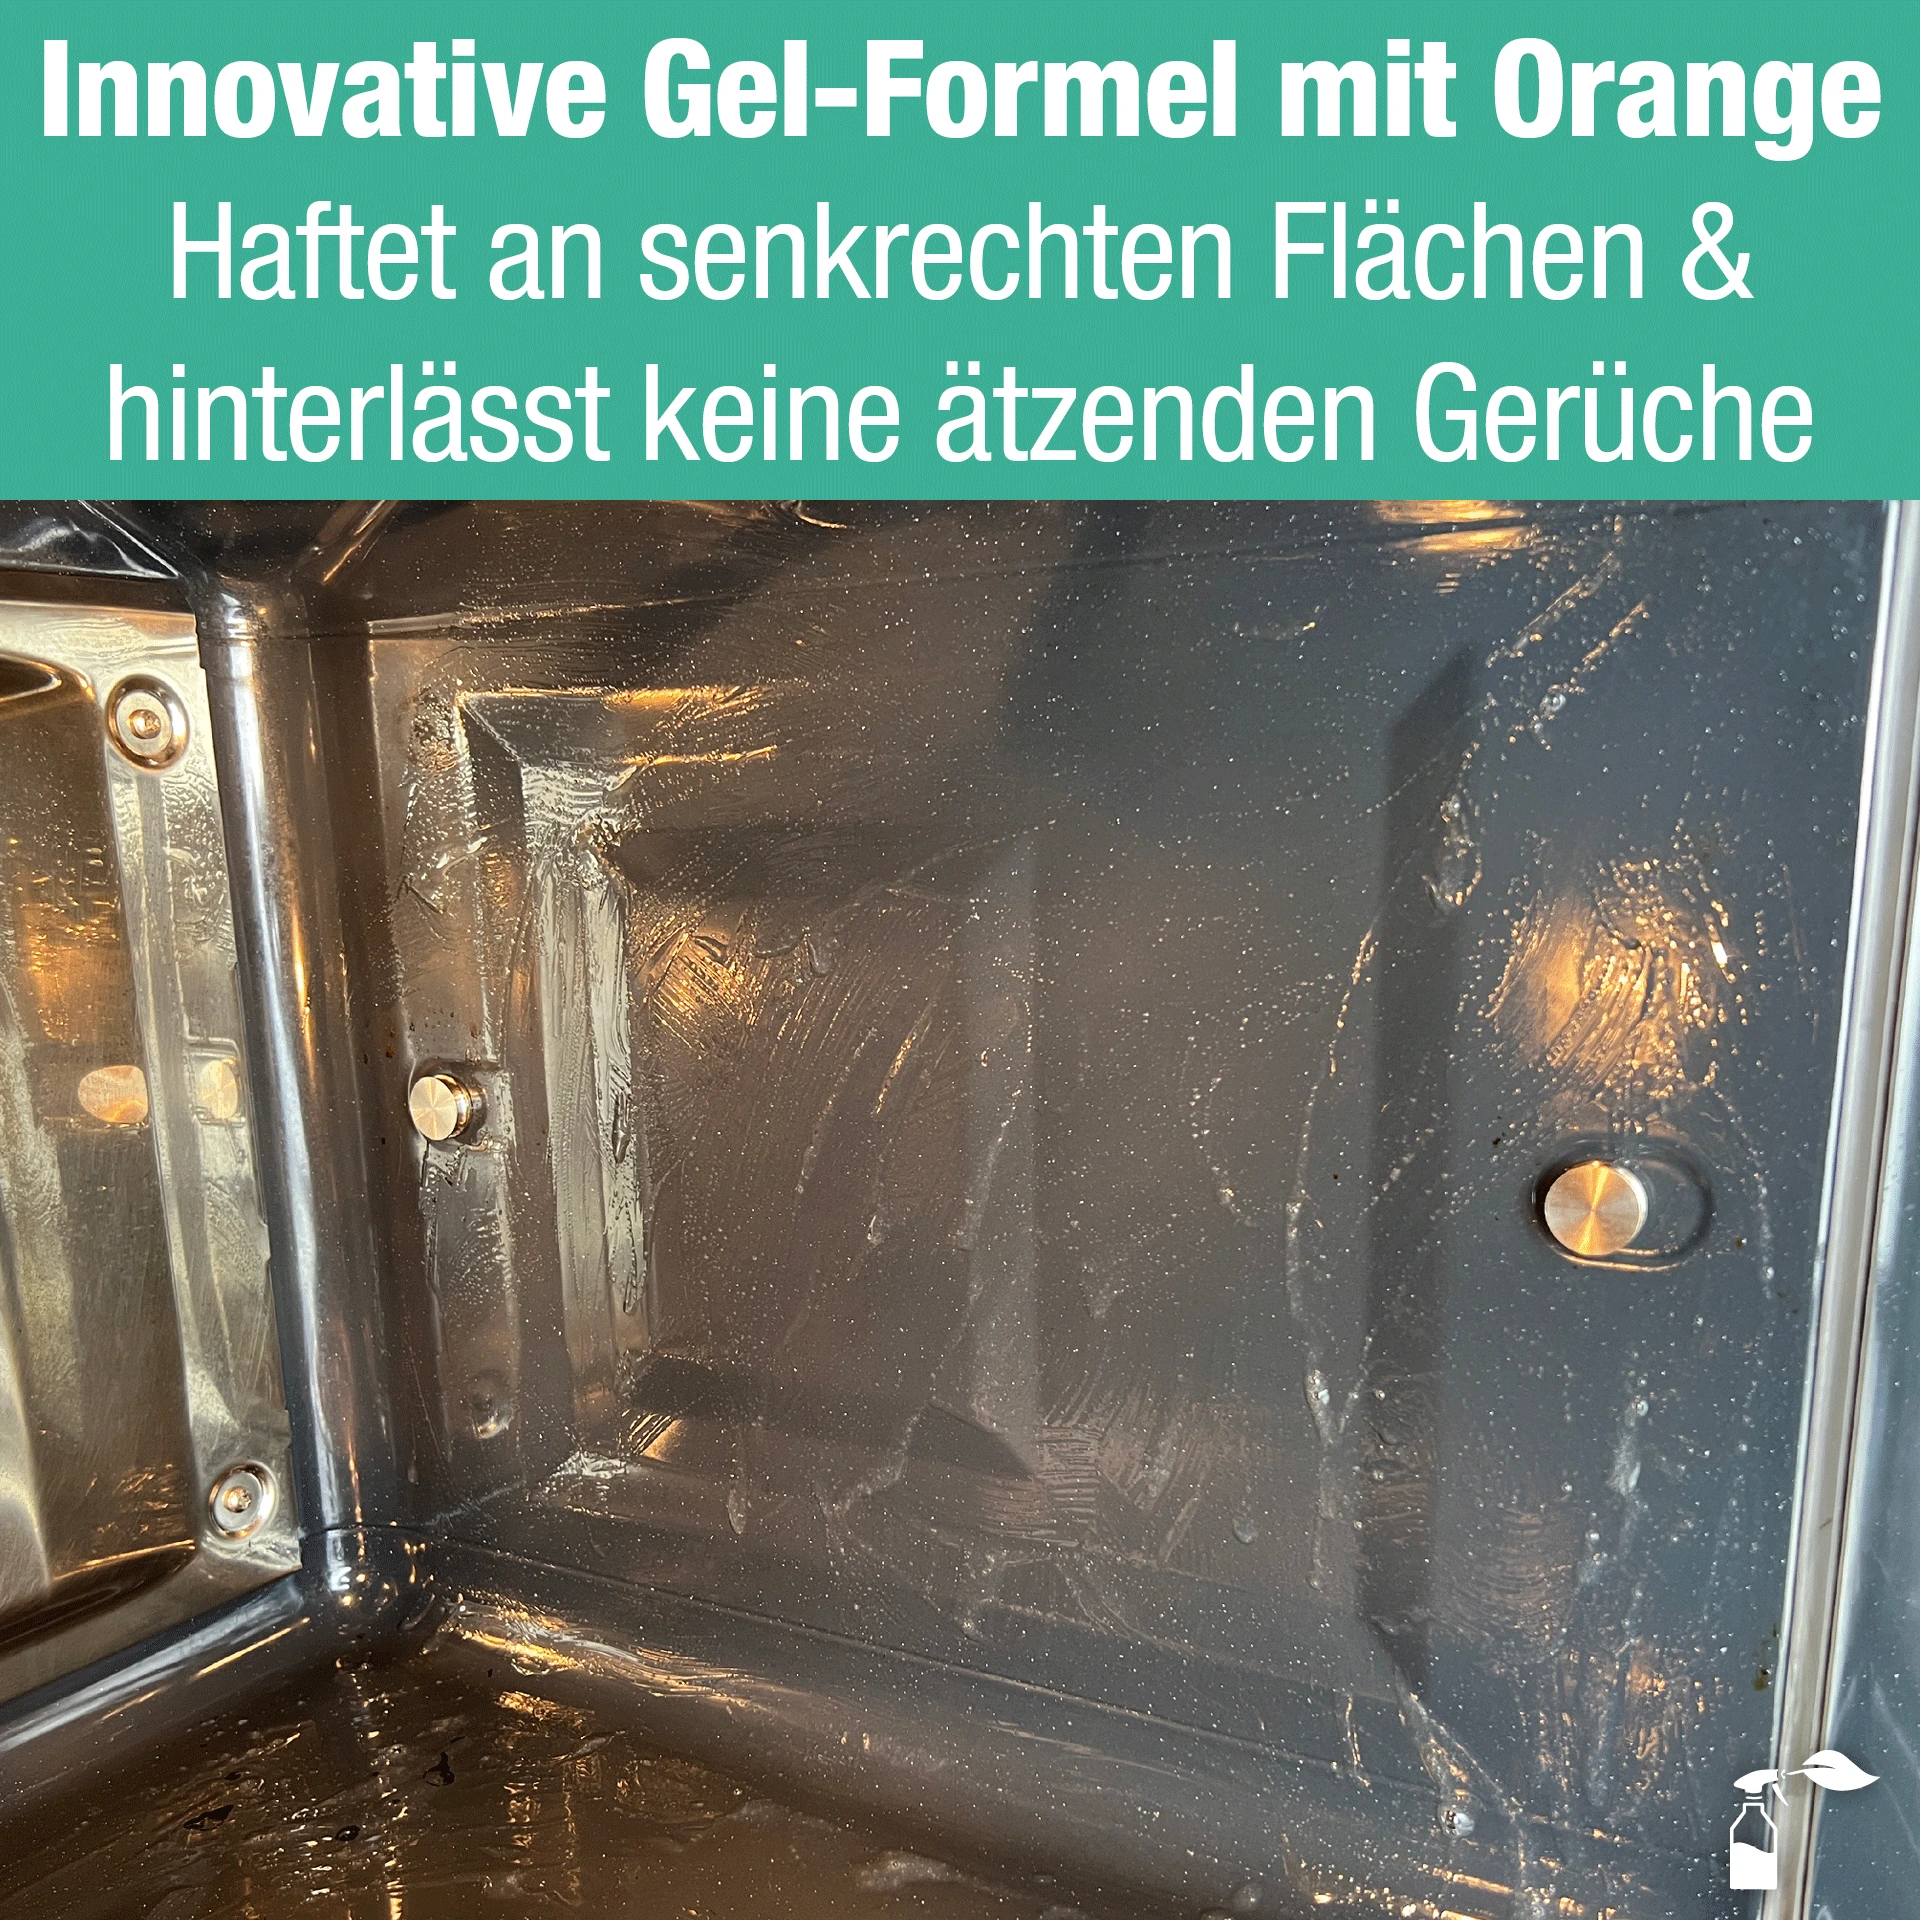 Innovative Gel-Formel mit Orangenduft.